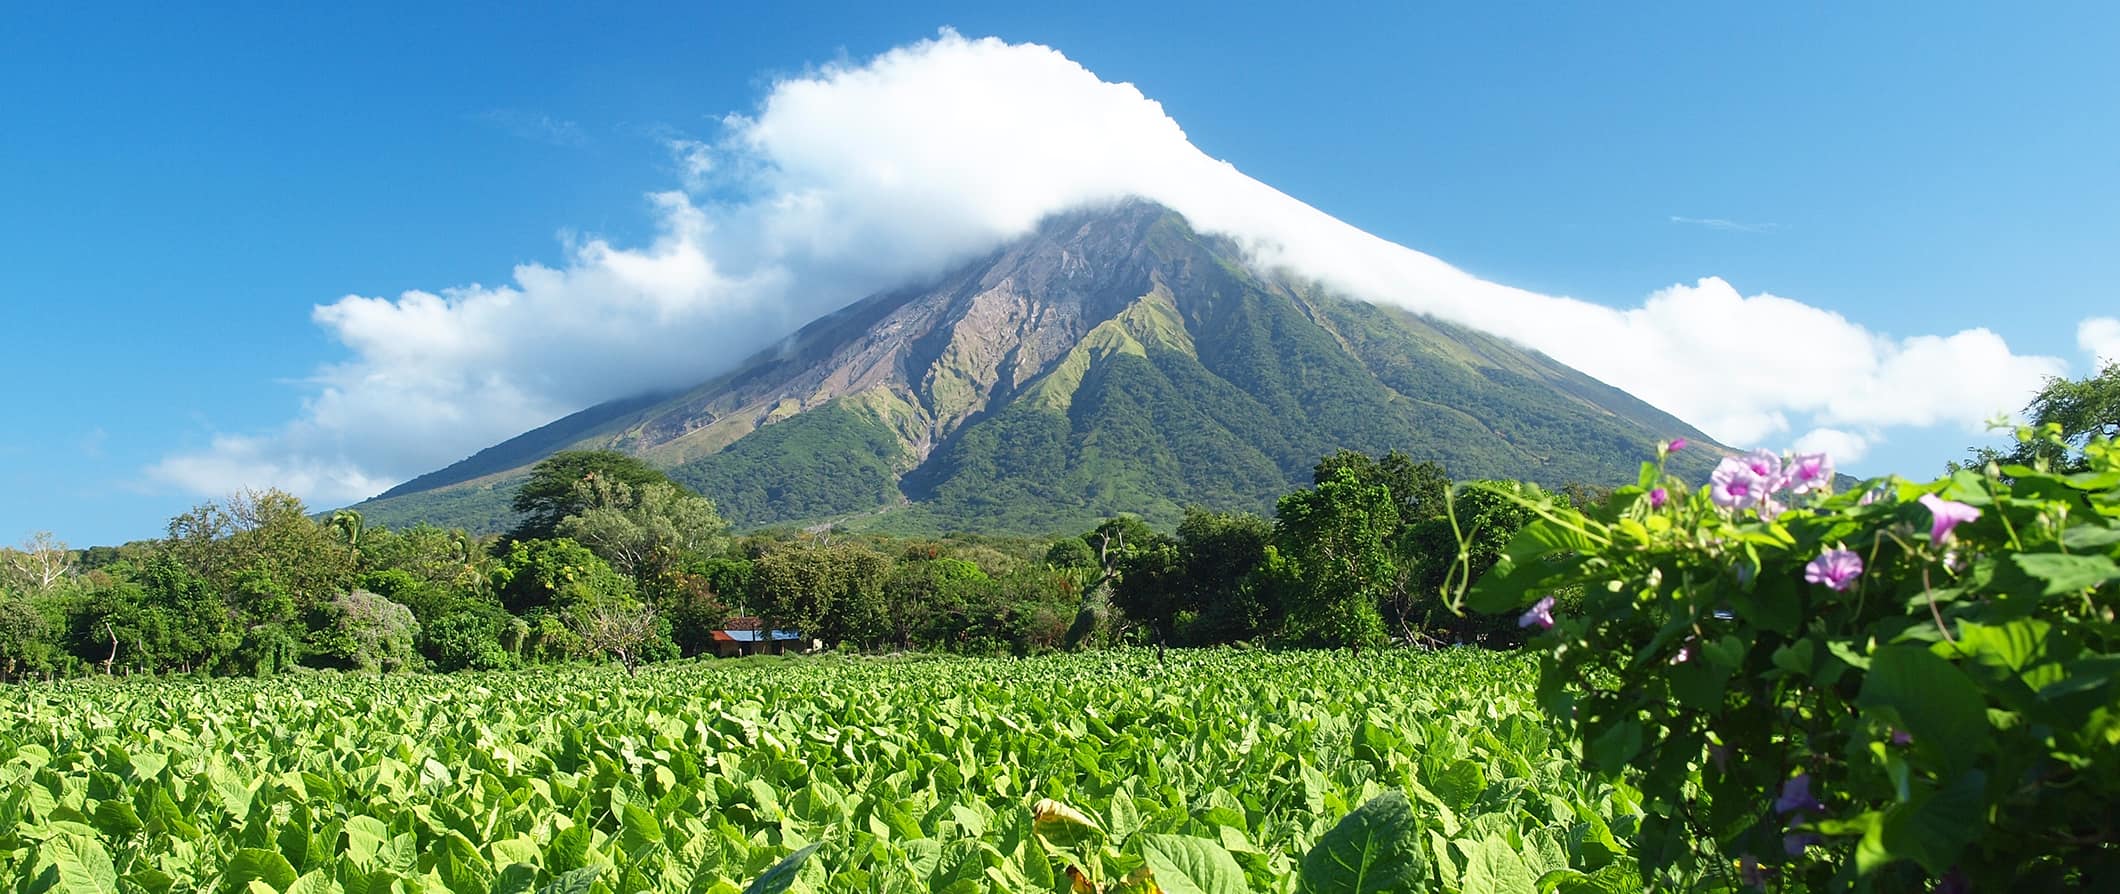 Vulcão imponente cercado por uma selva em um dia ensolarado brilhante na Nicarágua